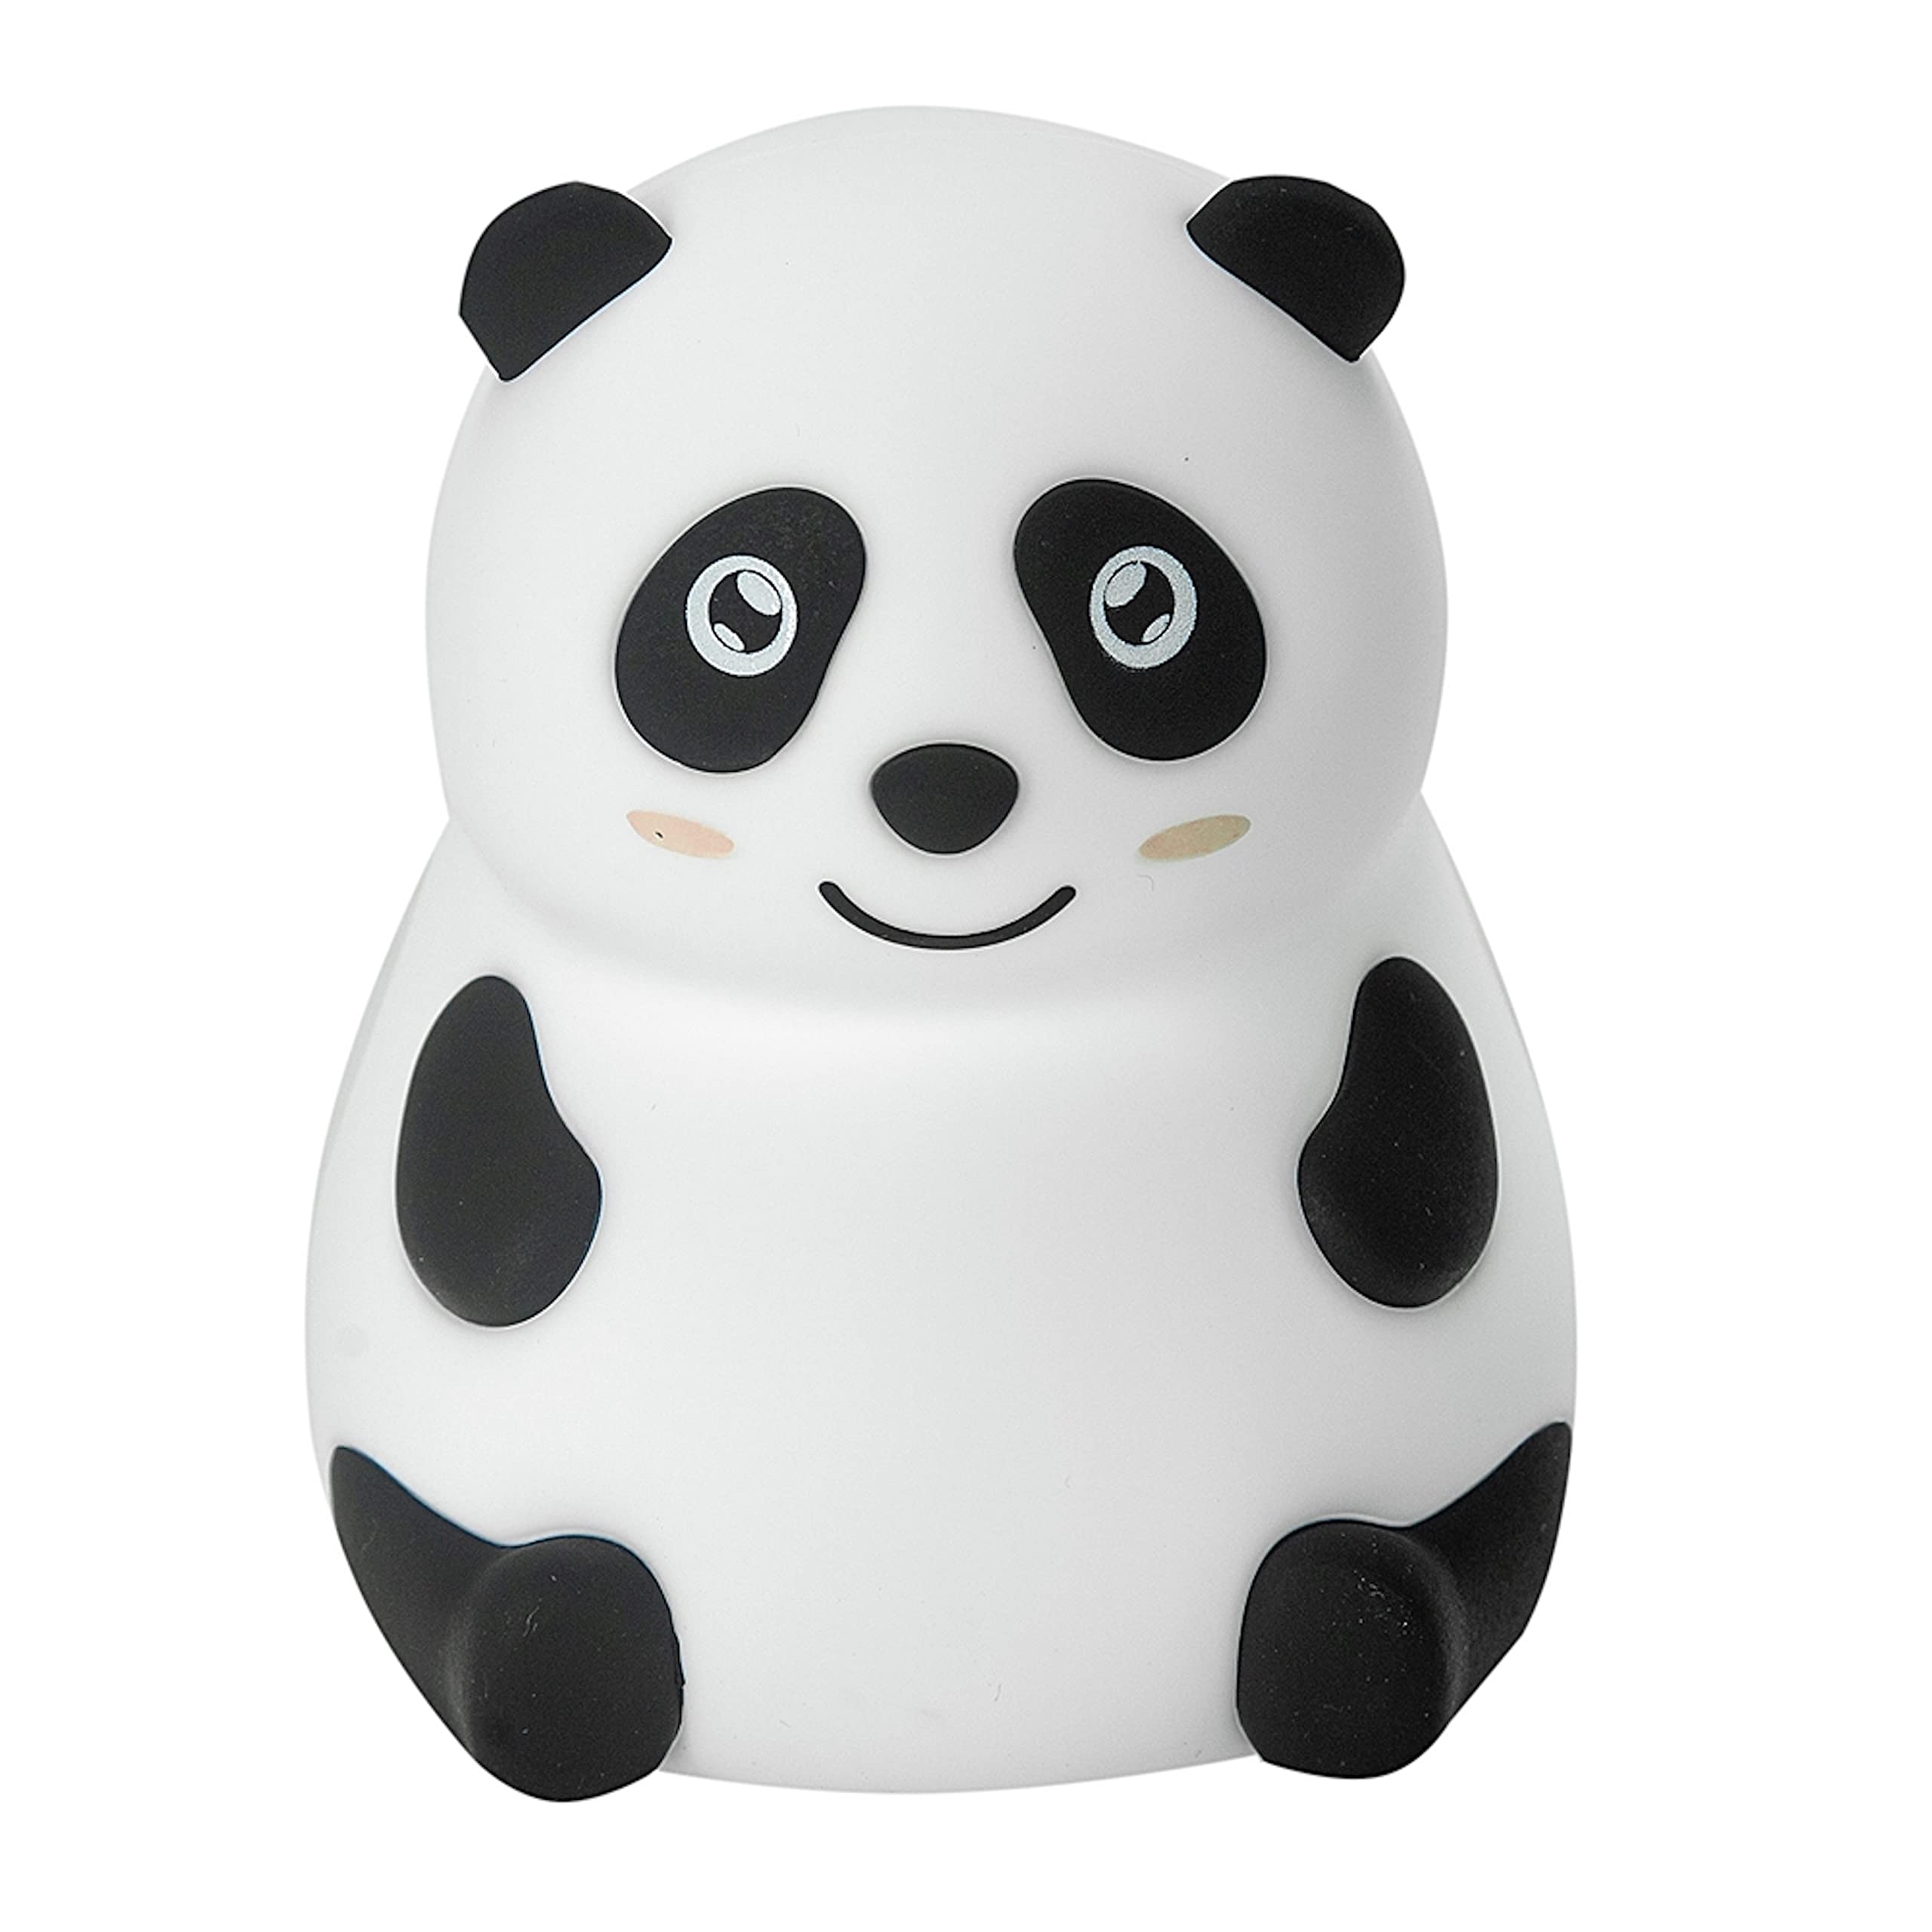 InnioGIO GIOpanda, Nachtlicht als Panda aus Silikon für Kinder, Aufladbar per Micro-USB, Deko für Baby- & Kleinkinderzimmer, Einschlafhilfe für Kids, LED Lampe in Tierform White